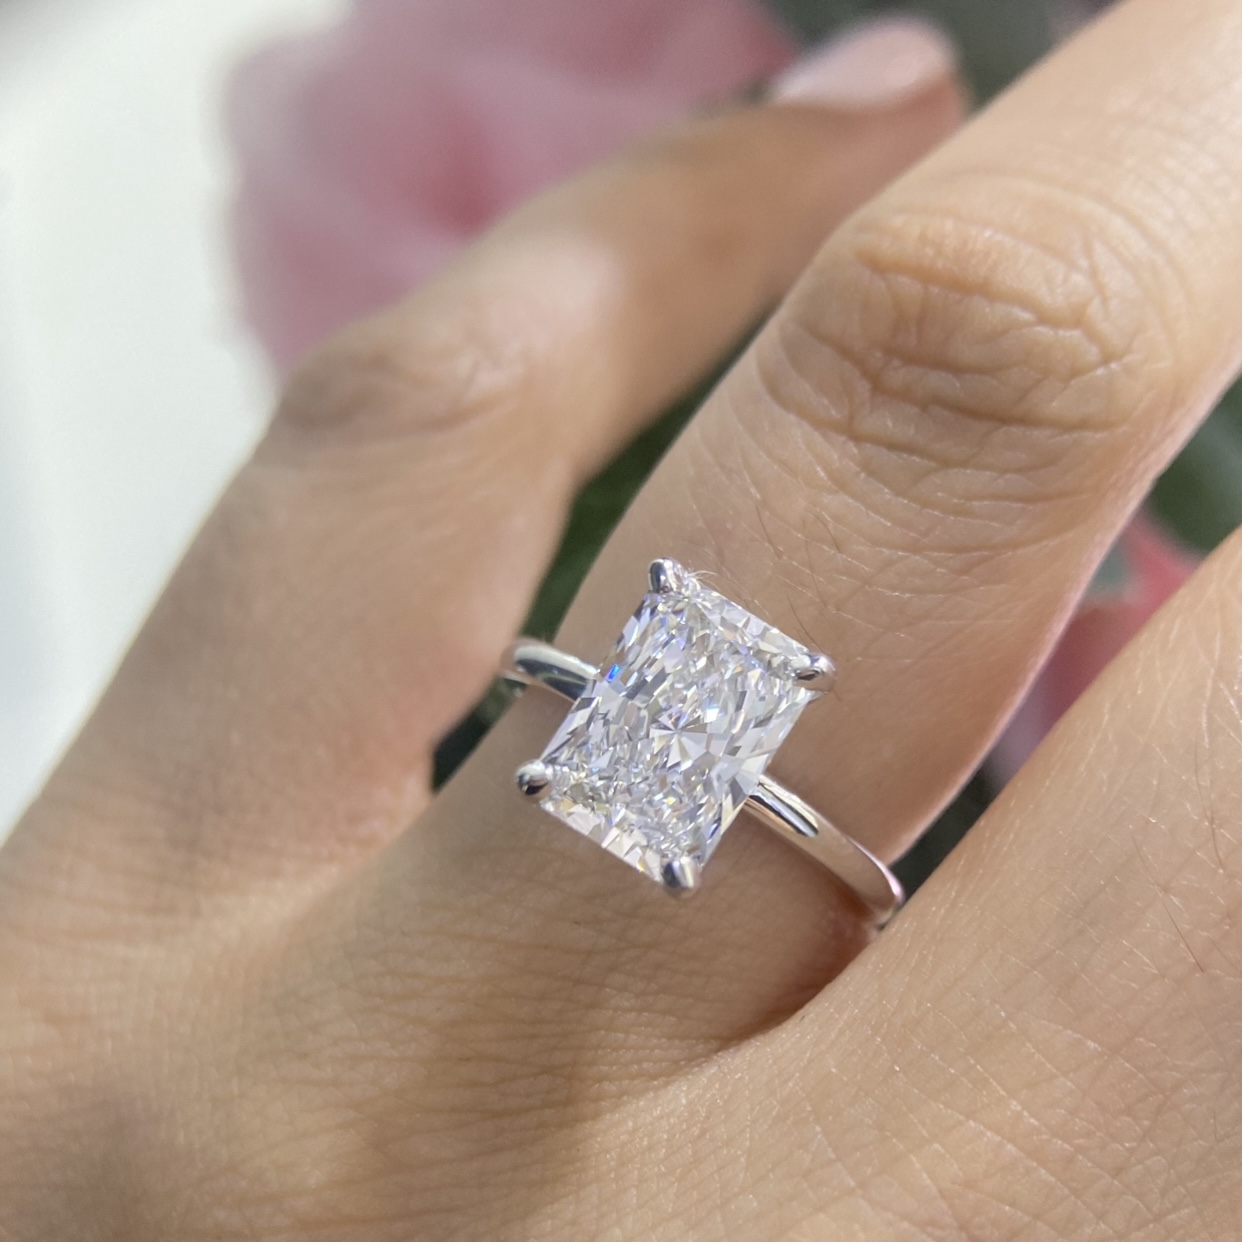 Unique 1/2 Carat Diamond Rings Design - Half Carat